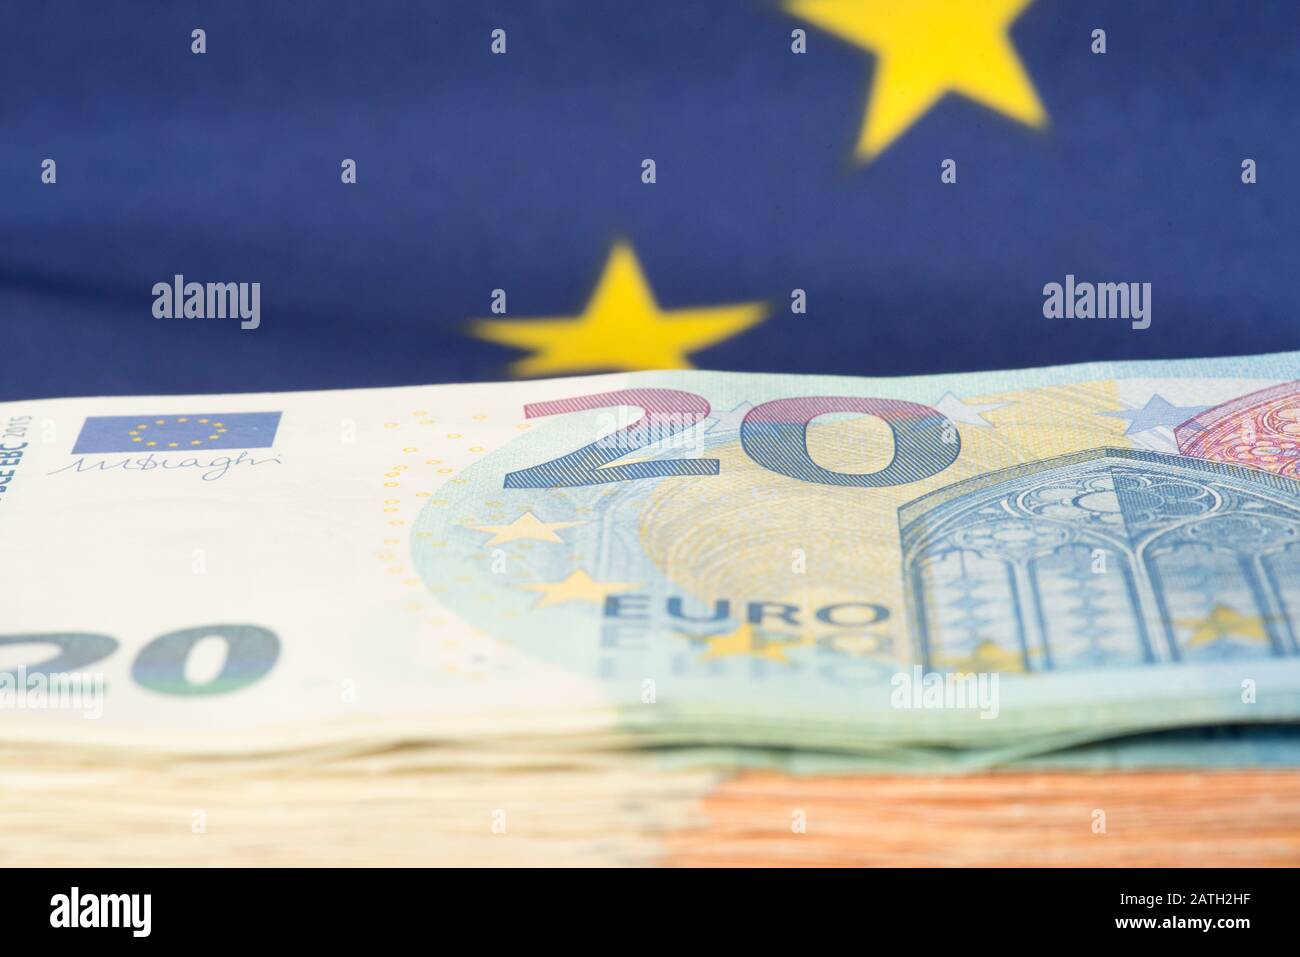 Euro bills and European Union flag Stock Photo